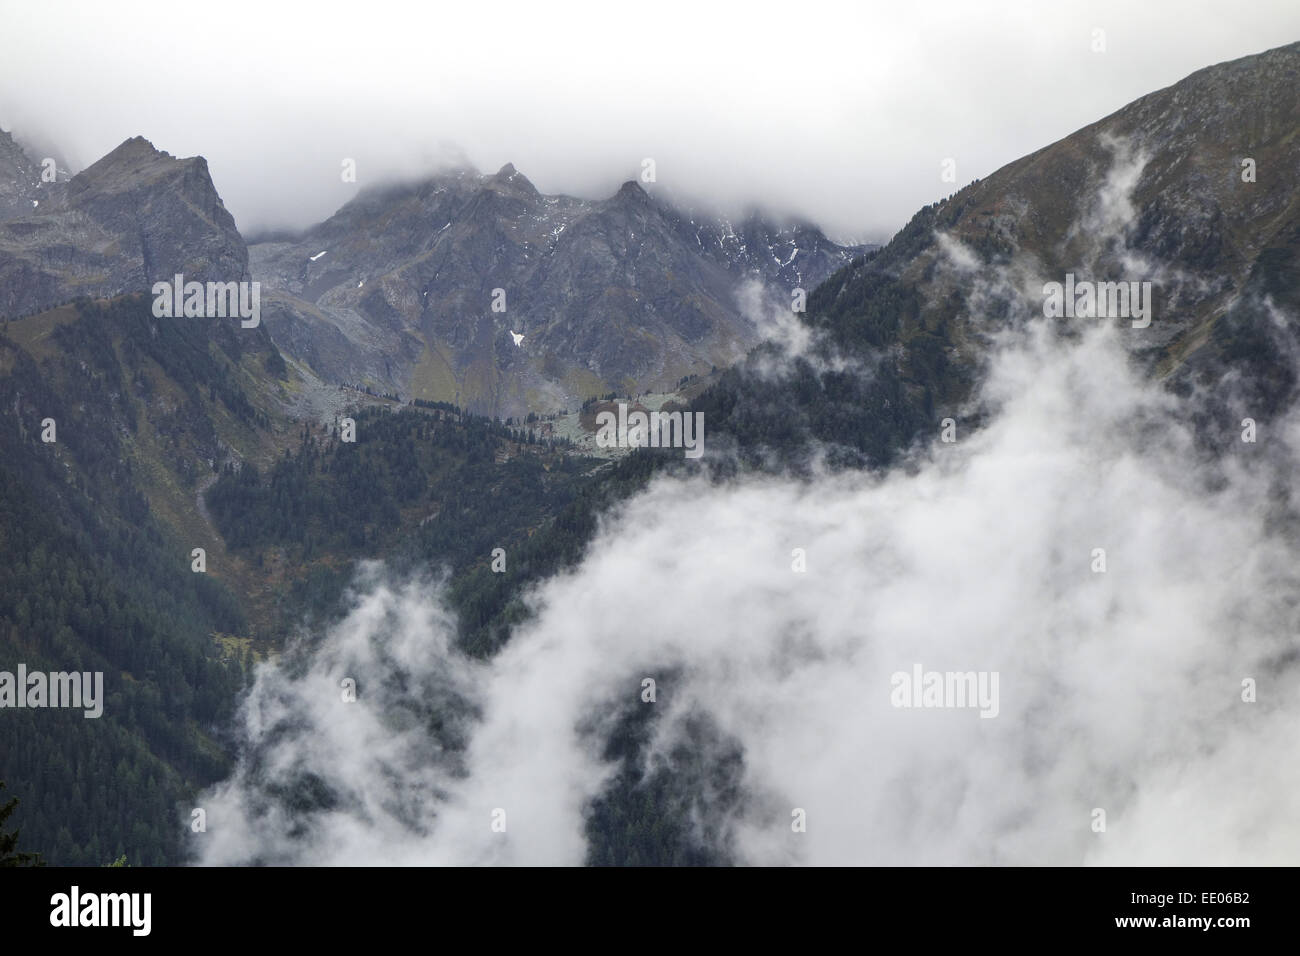 Wolken im Gebirge, schlechtes Wetter, nuvole in montagna, di cattive condizioni atmosferiche, montagne, montagna, Alpi, nuvole, nuvoloso, foschia, nebbia Foto Stock